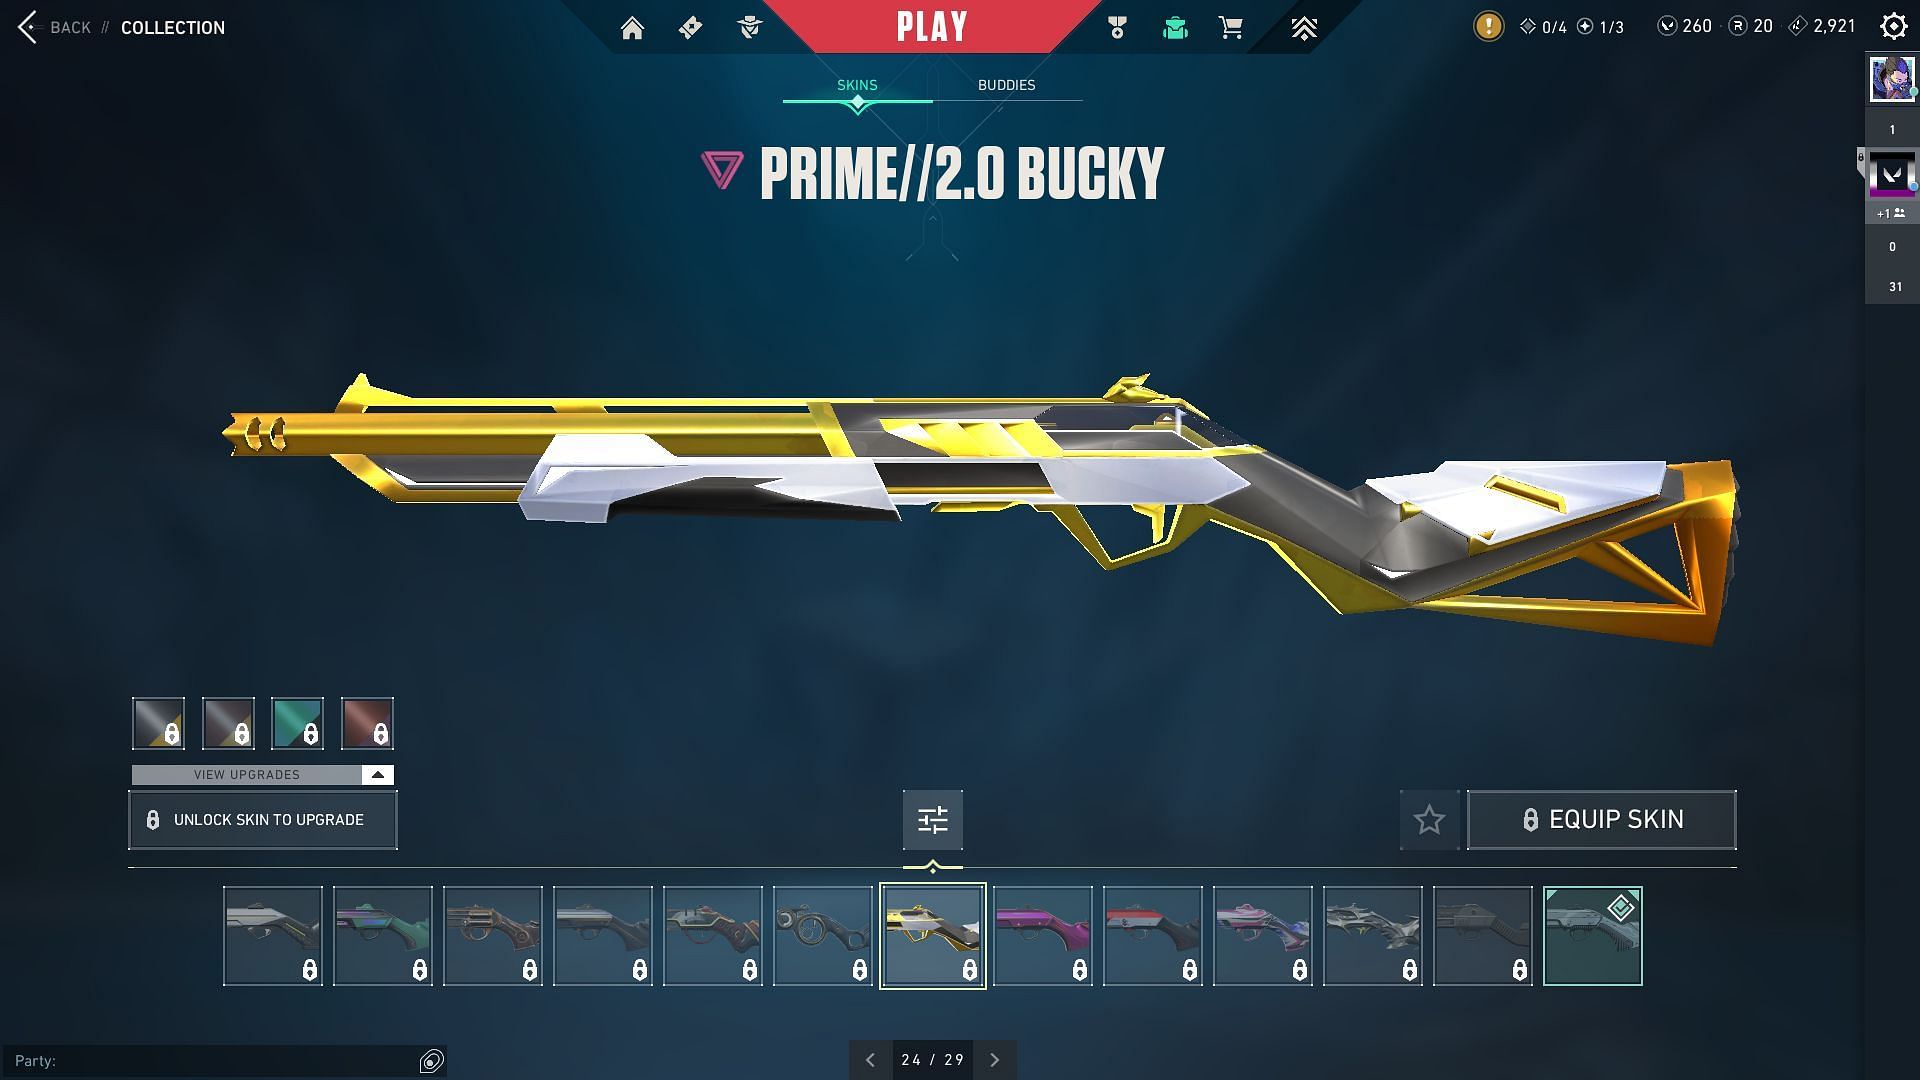 Prime 2.0 Bucky in Valorant (Image via Riot Games)